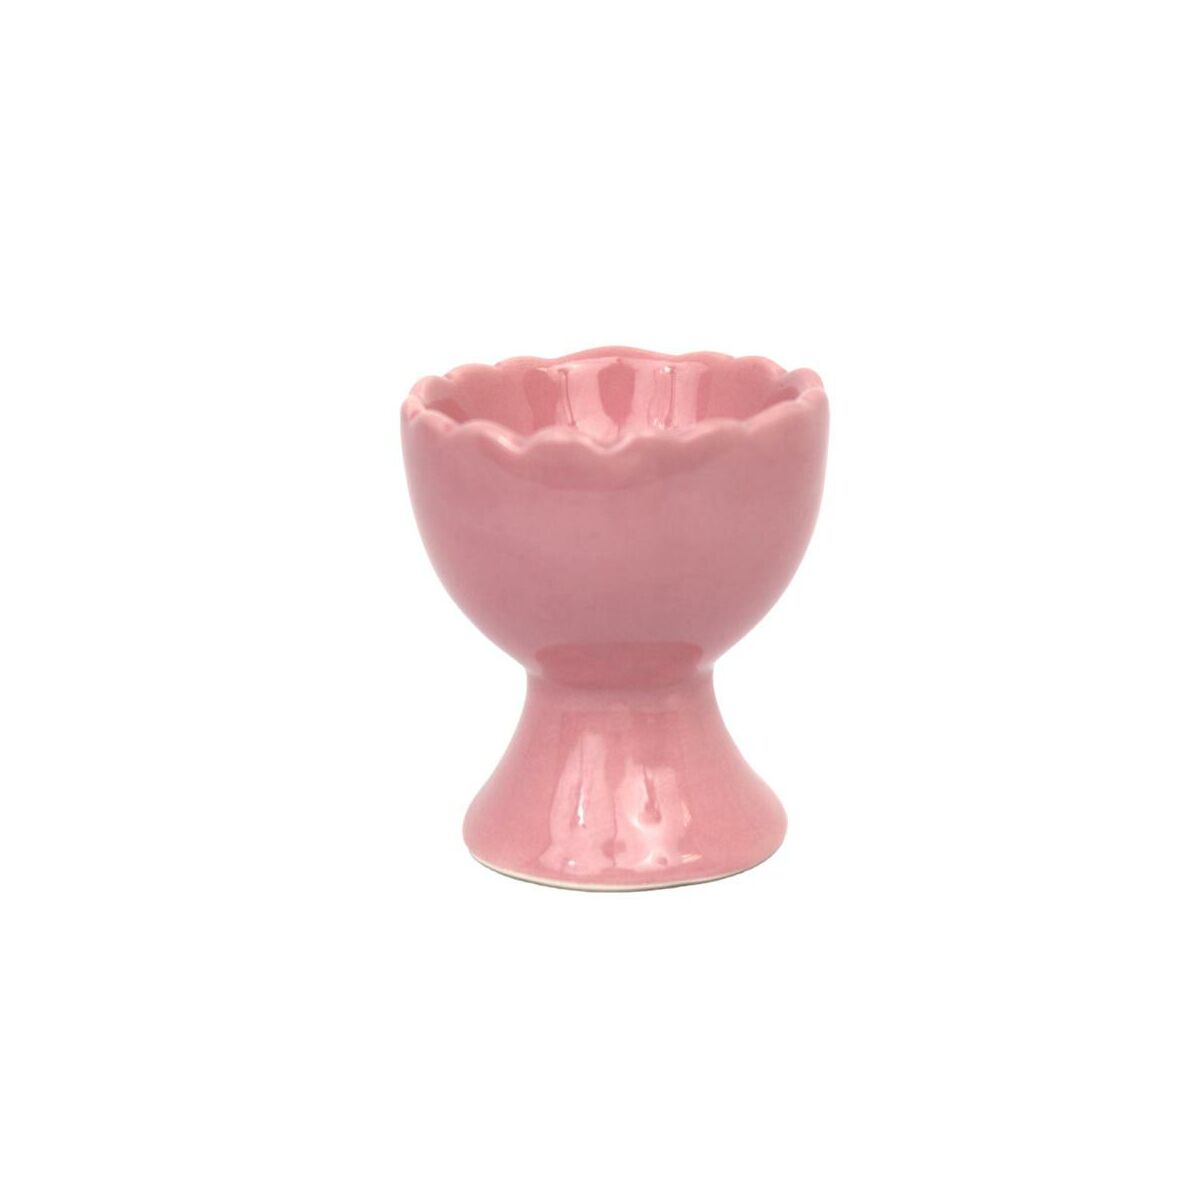 Podstawka pod jajko na miękko 6.5 cm różowy ceramiczny